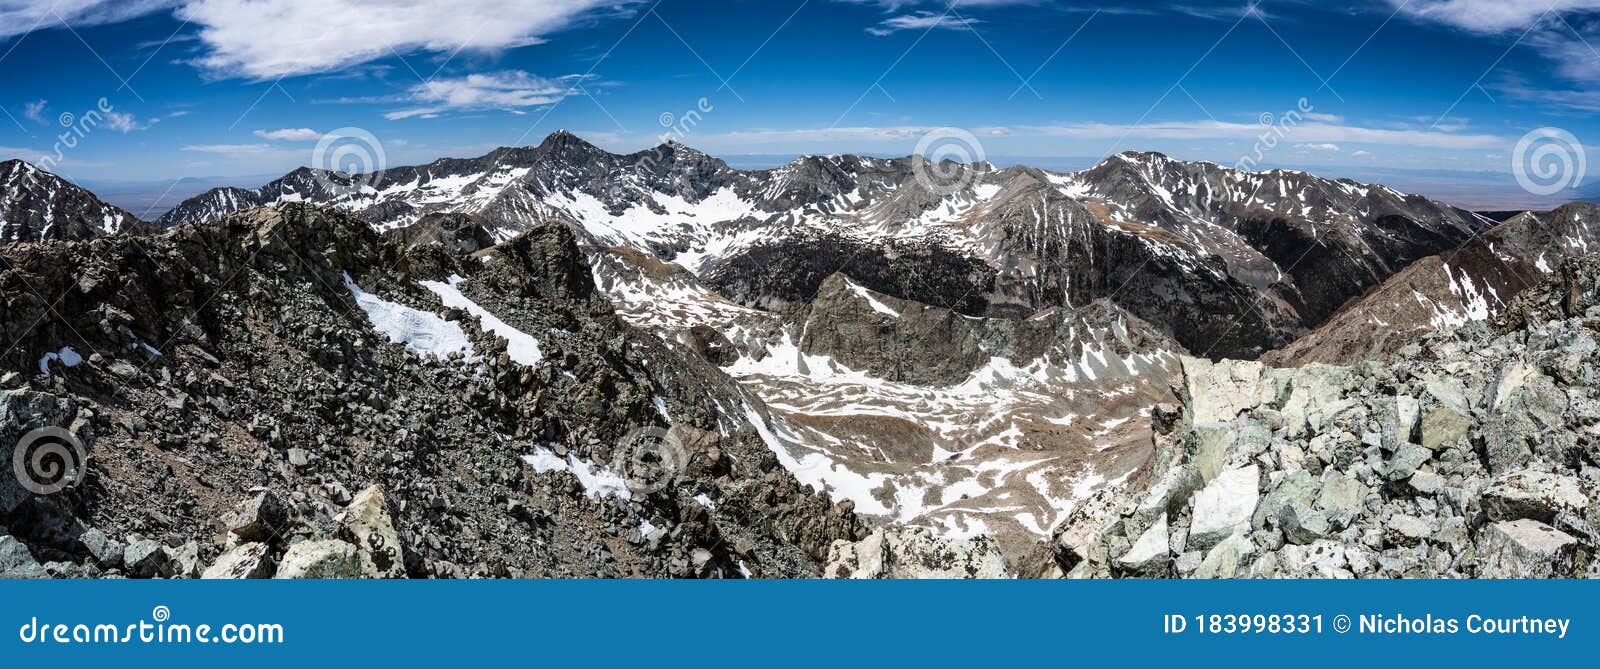 panorama of the sangre de cristo range, colorado rocky mountains